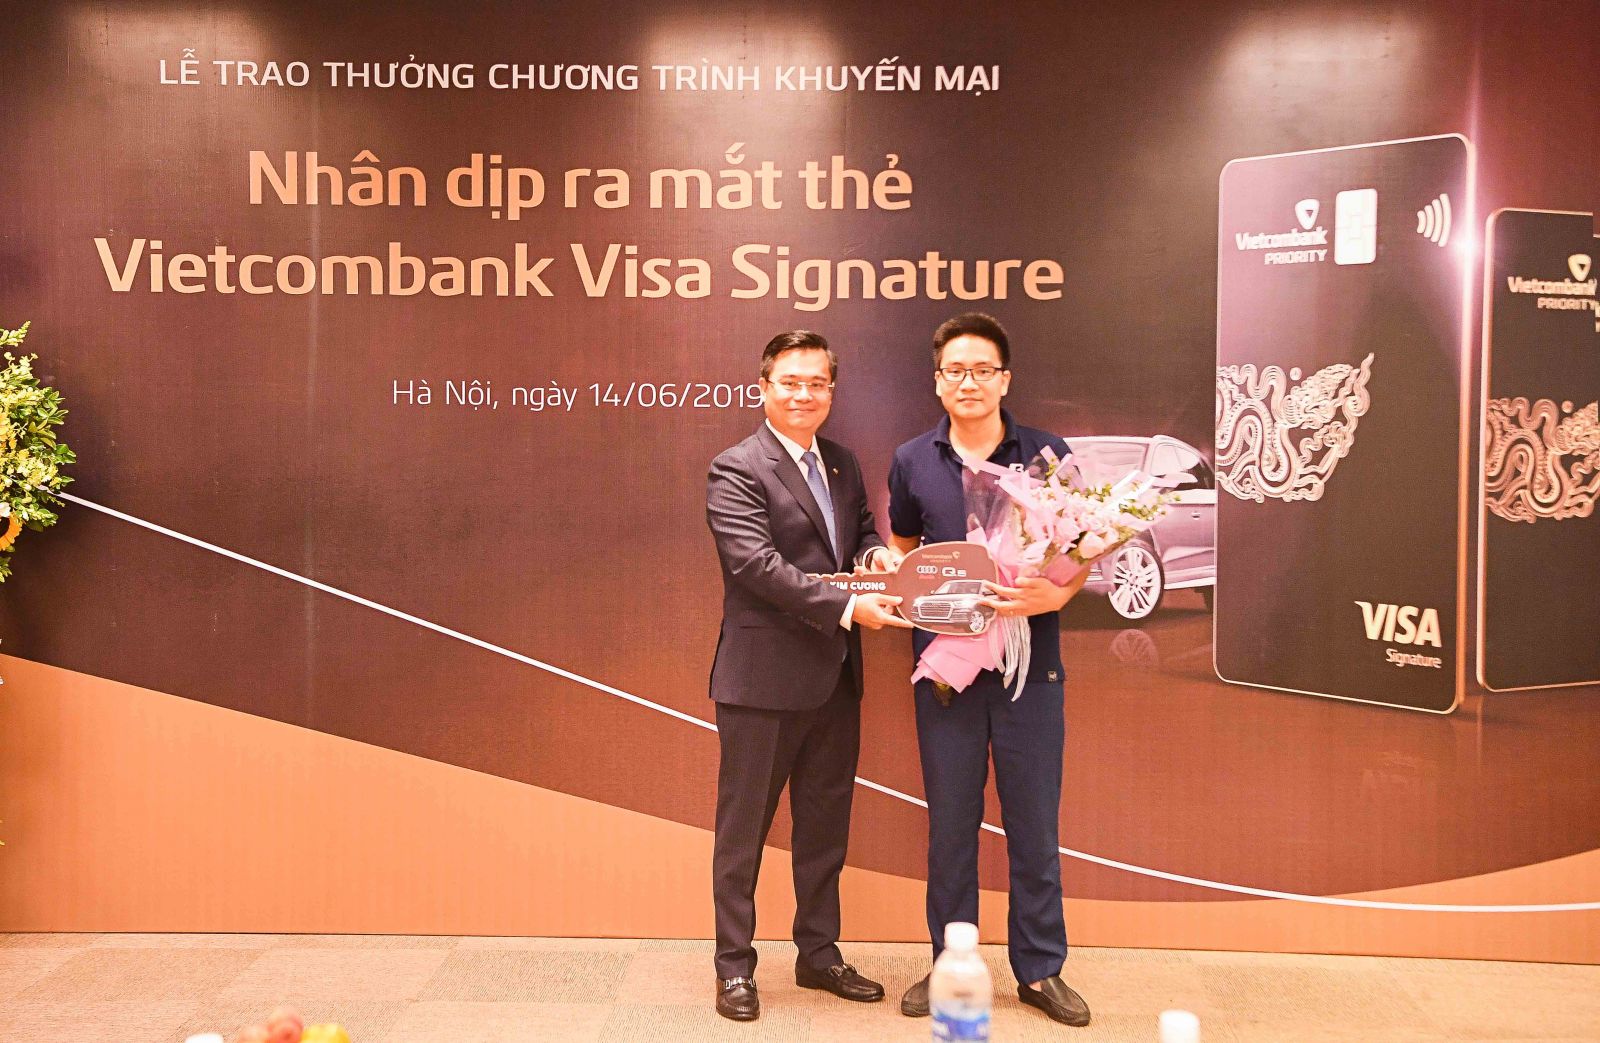 1. Đại diện Ban lãnh đạo Vietcombank, ông Nguyễn Thanh Tùng – Phó Tổng Giám đốc trao giải thưởng kim cương cho khách hàng Lê Văn Khánh 